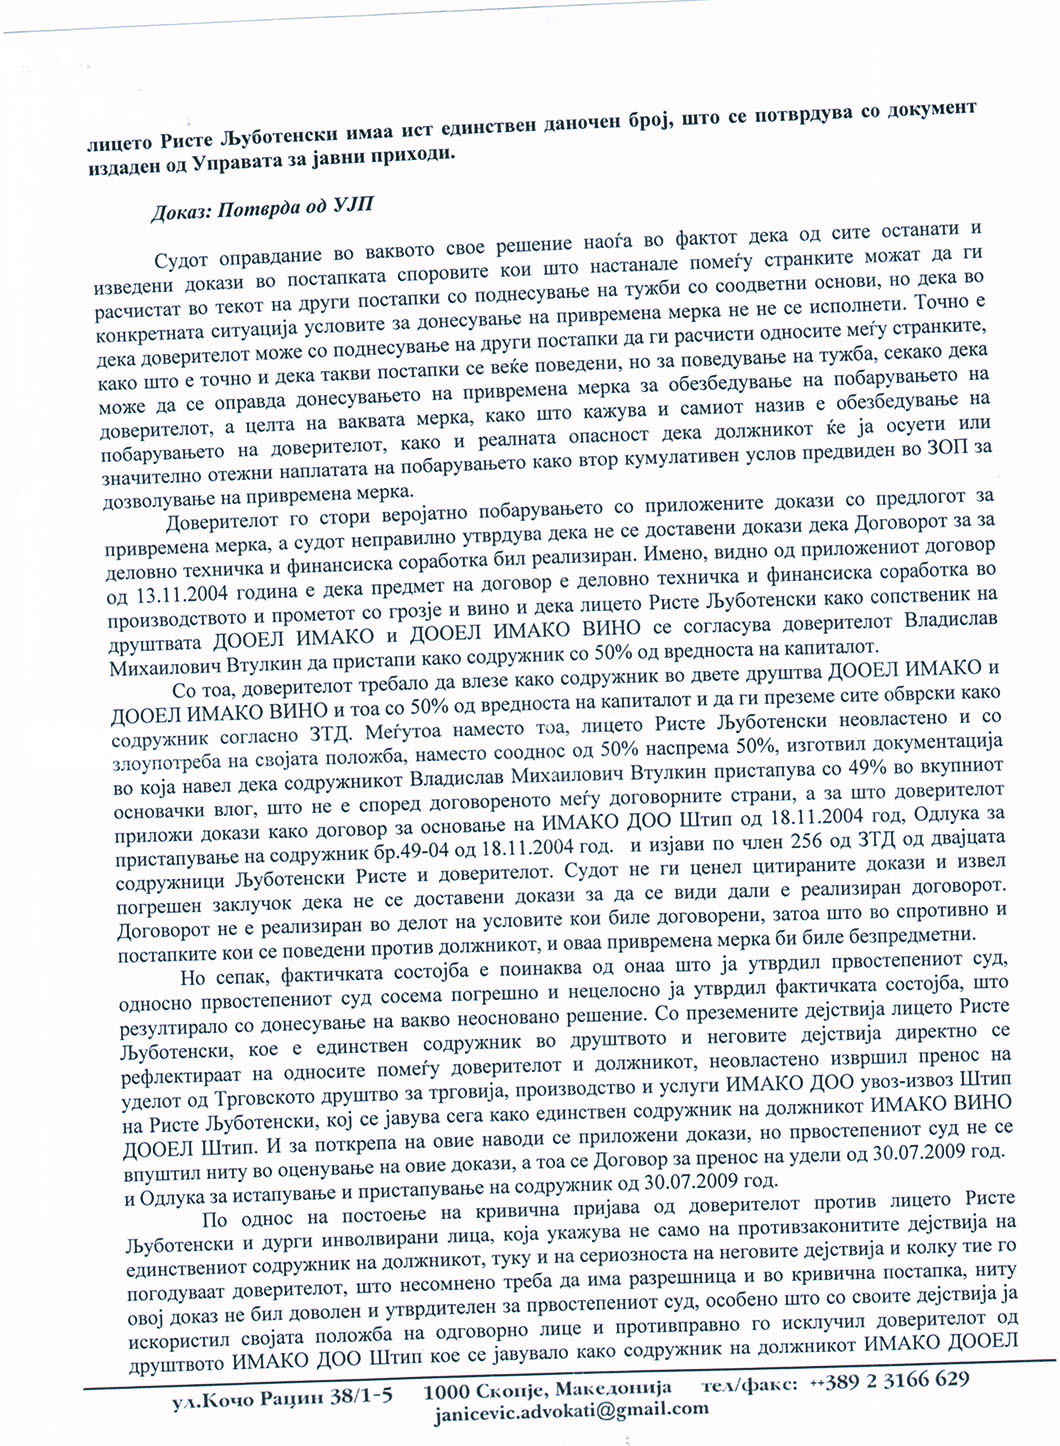 2.06.06.2013Zalba protiv Resenie za v.m. - Vladislav-Imako Vino_Page_3